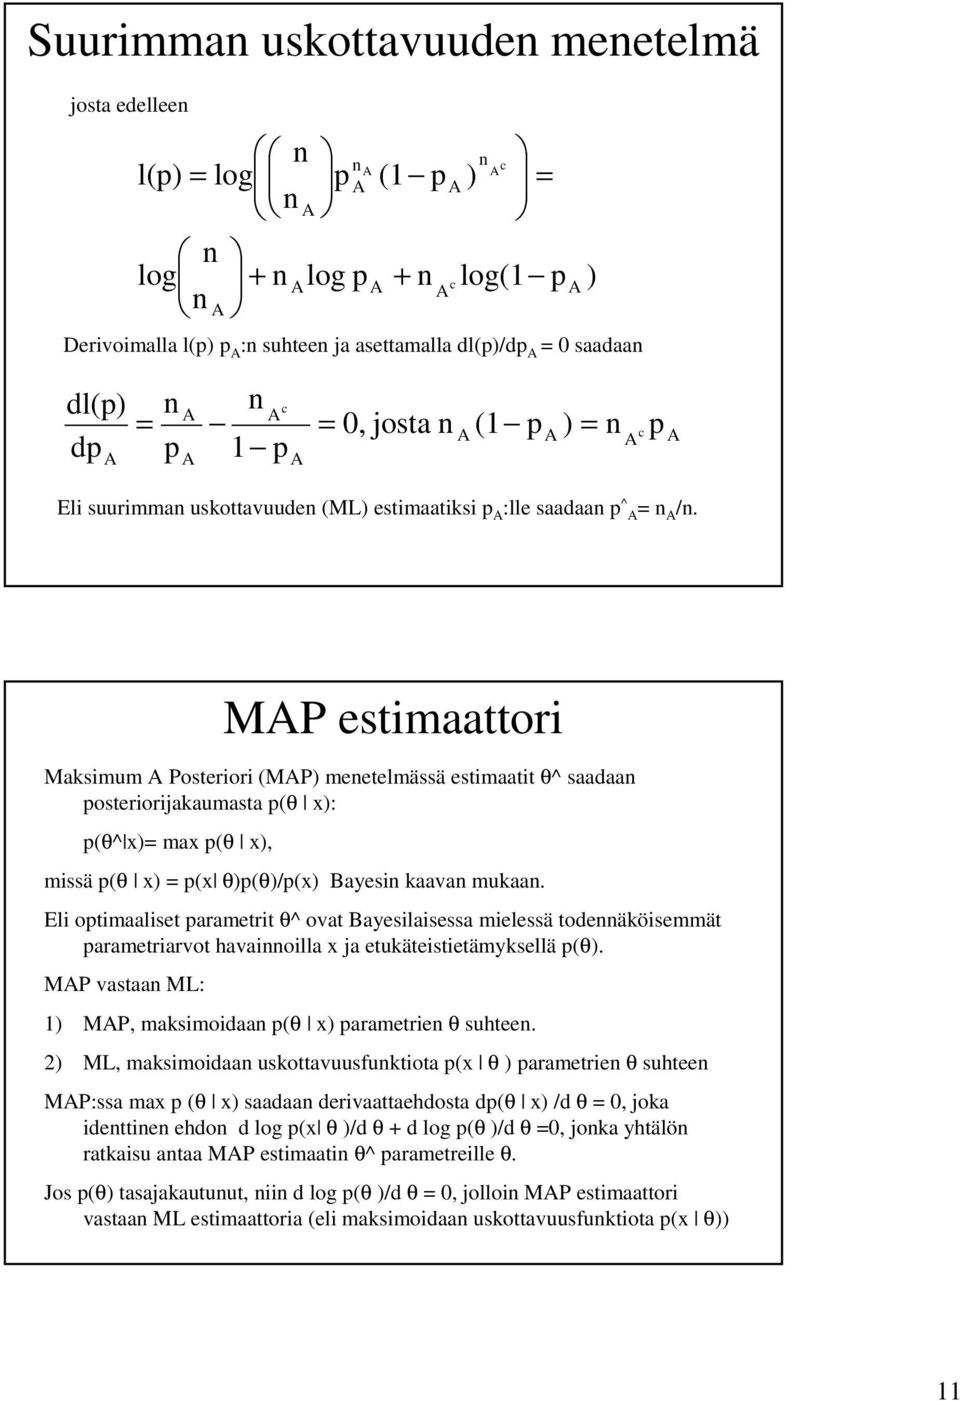 El otmaalset arametrt θ^ ovat Bayeslasessa melessä todeäösemmät arametrarvot havaolla x ja etuätestetämysellä (θ). MP vastaa ML: 1) MP, masmodaa (θ x) arametre θ suhtee.